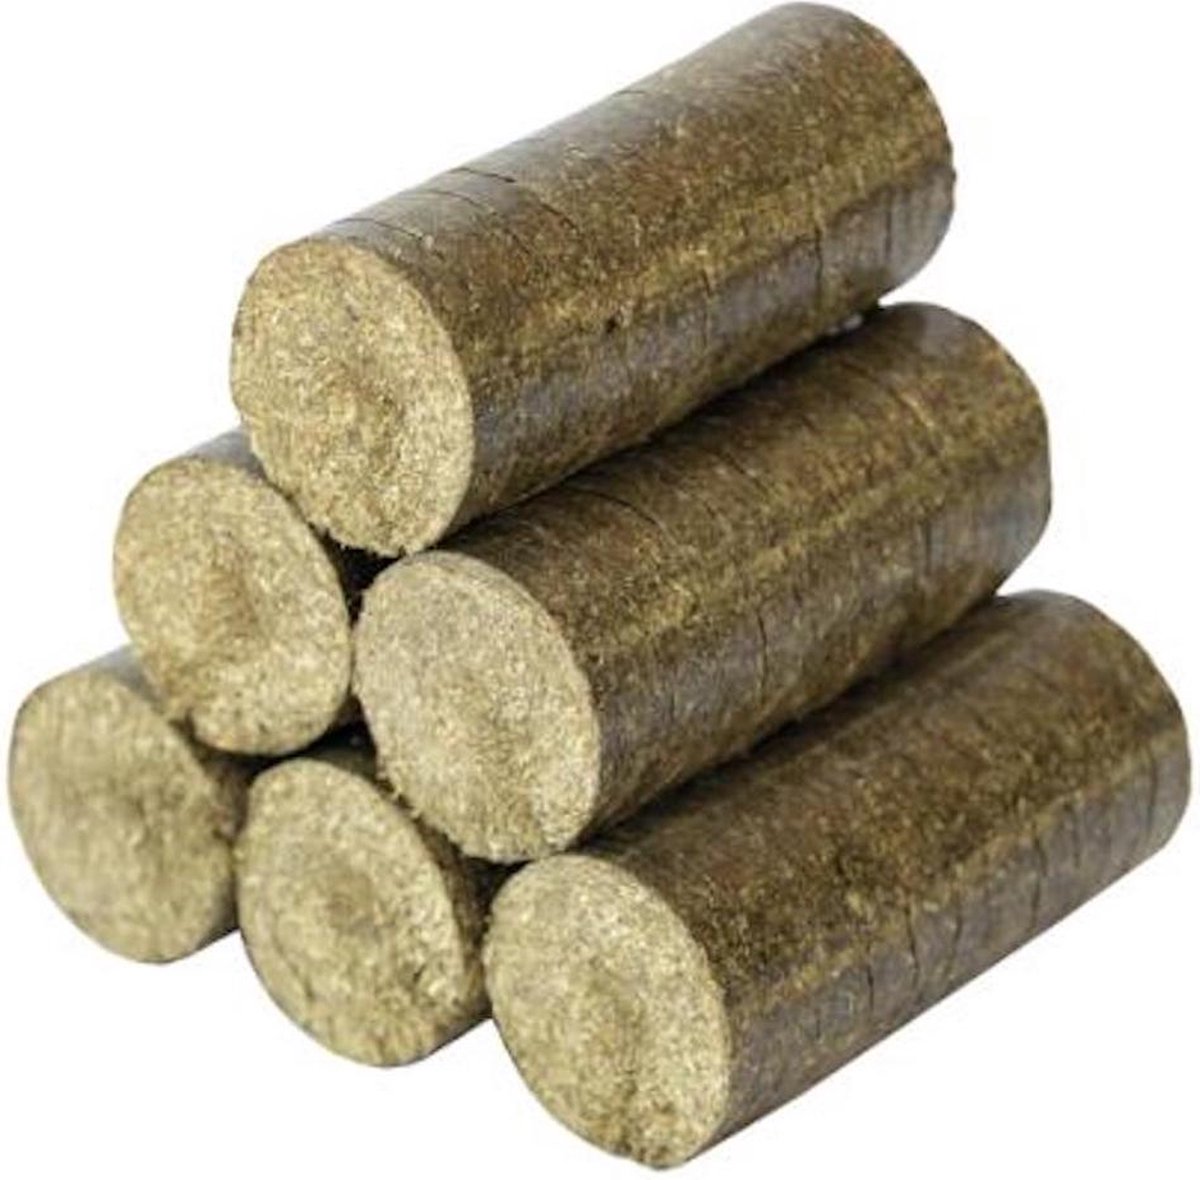 Eco-briketten-Nestro - brandhout - hout briketten geperst - 20kg -10 briketten